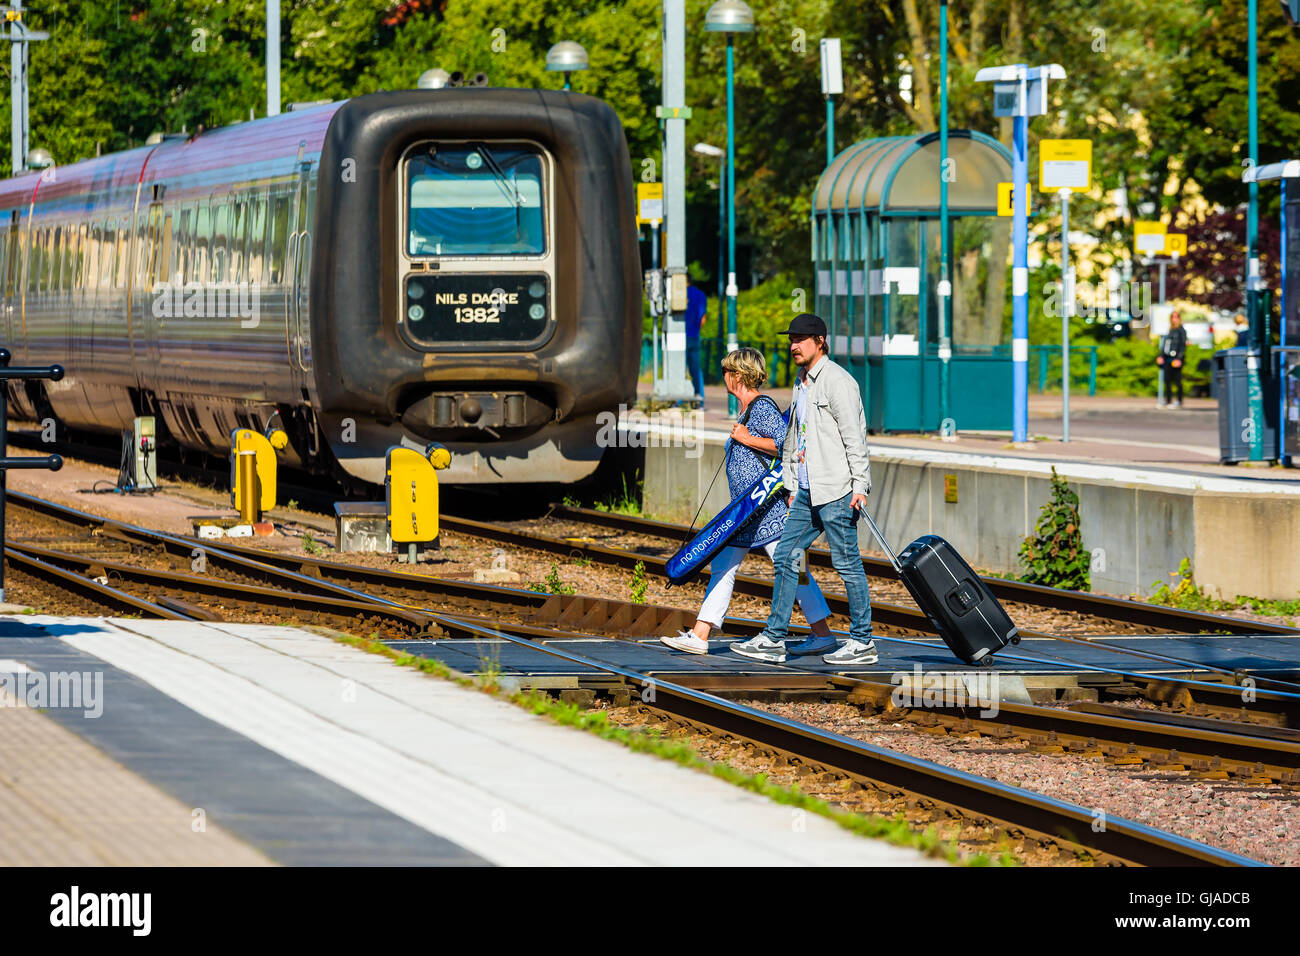 Kalmar, Suecia - Agosto 10, 2016: la gente con carro bolsas cruzando las vías para llegar a la plataforma de la estación de tren. Foto de stock